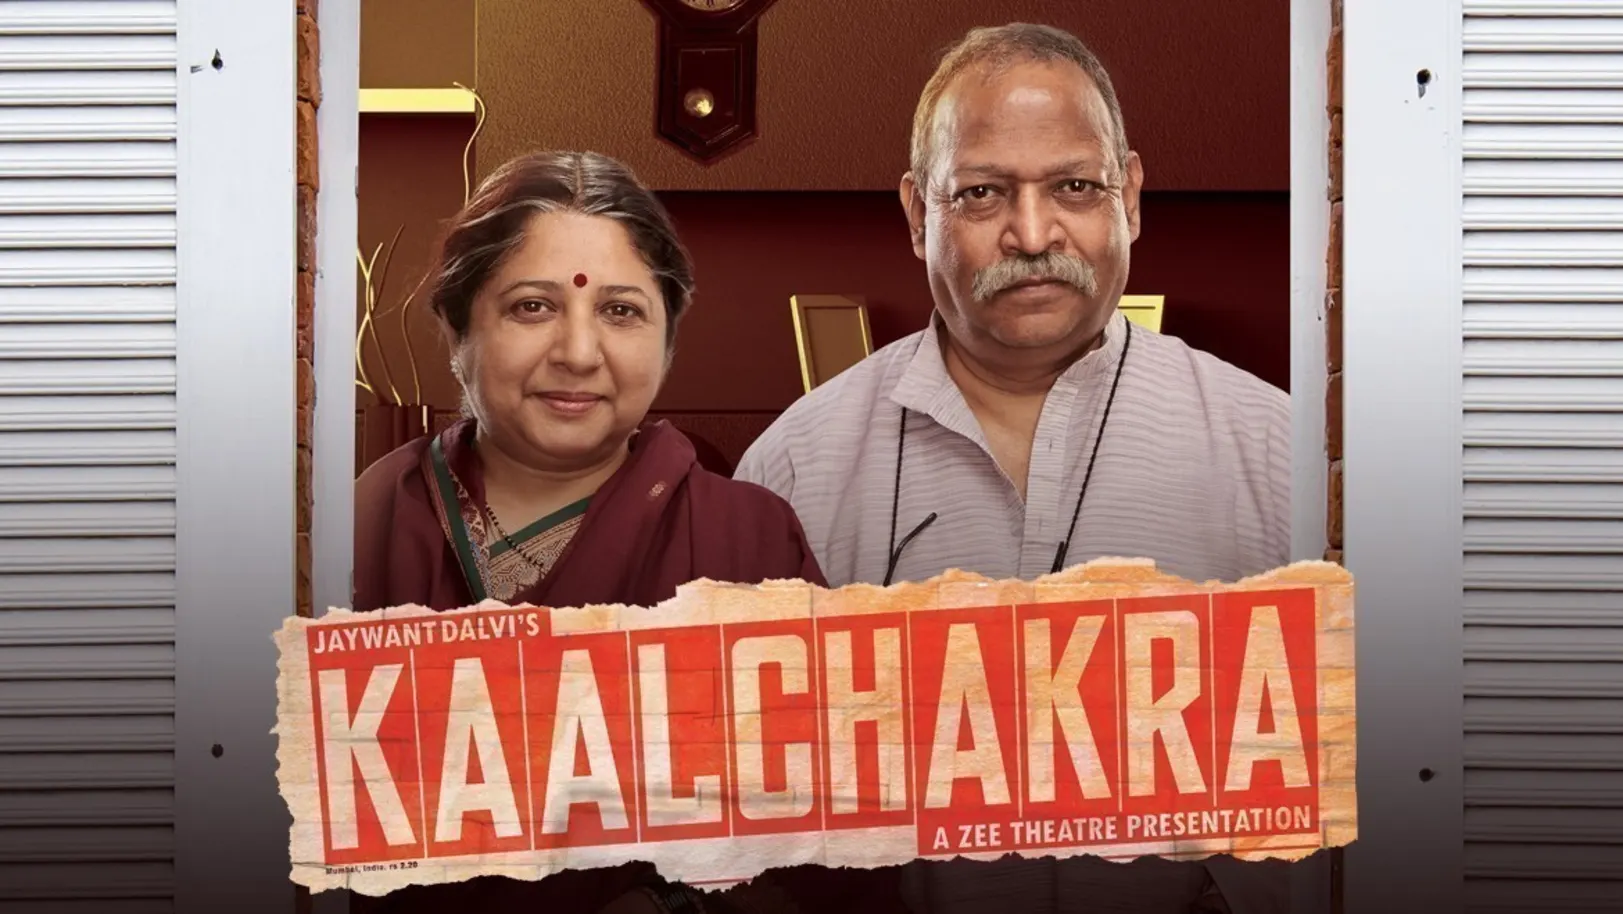 Kaalchakra Movie